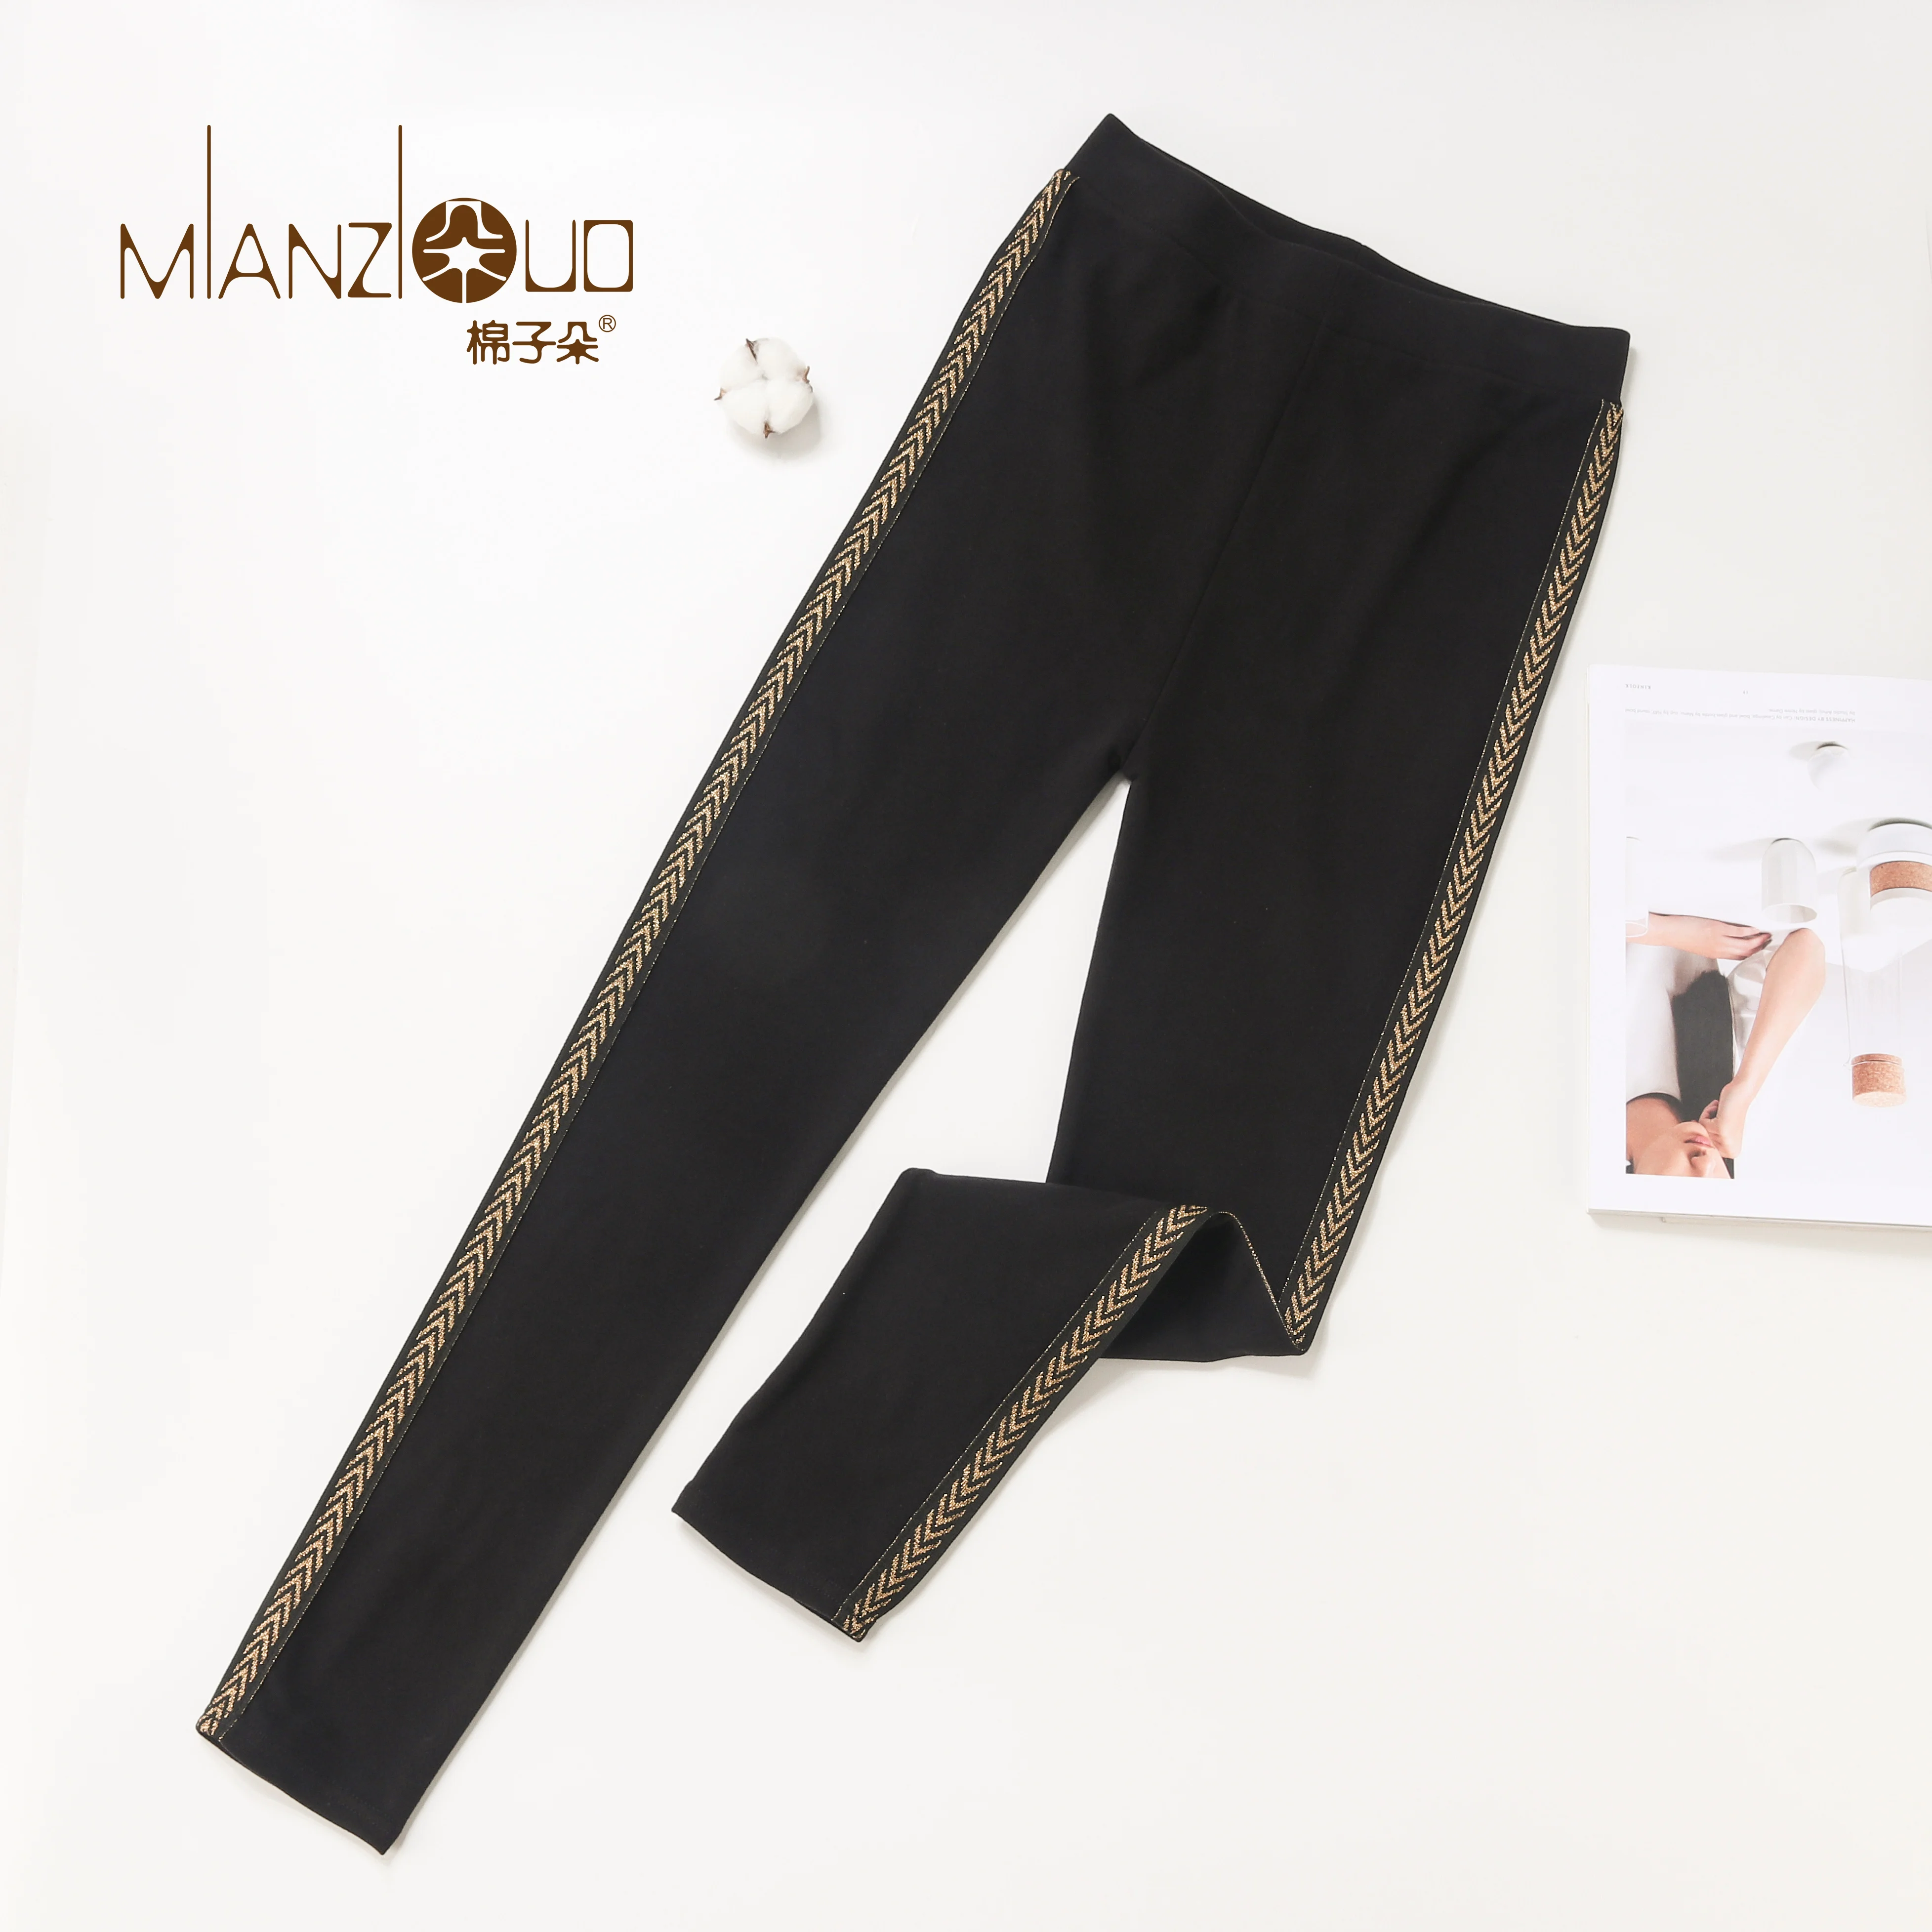 Mianziduo/ новые модные женские осенние и зимние эластичные и качественные плотные бархатные брюки теплые леггинсы